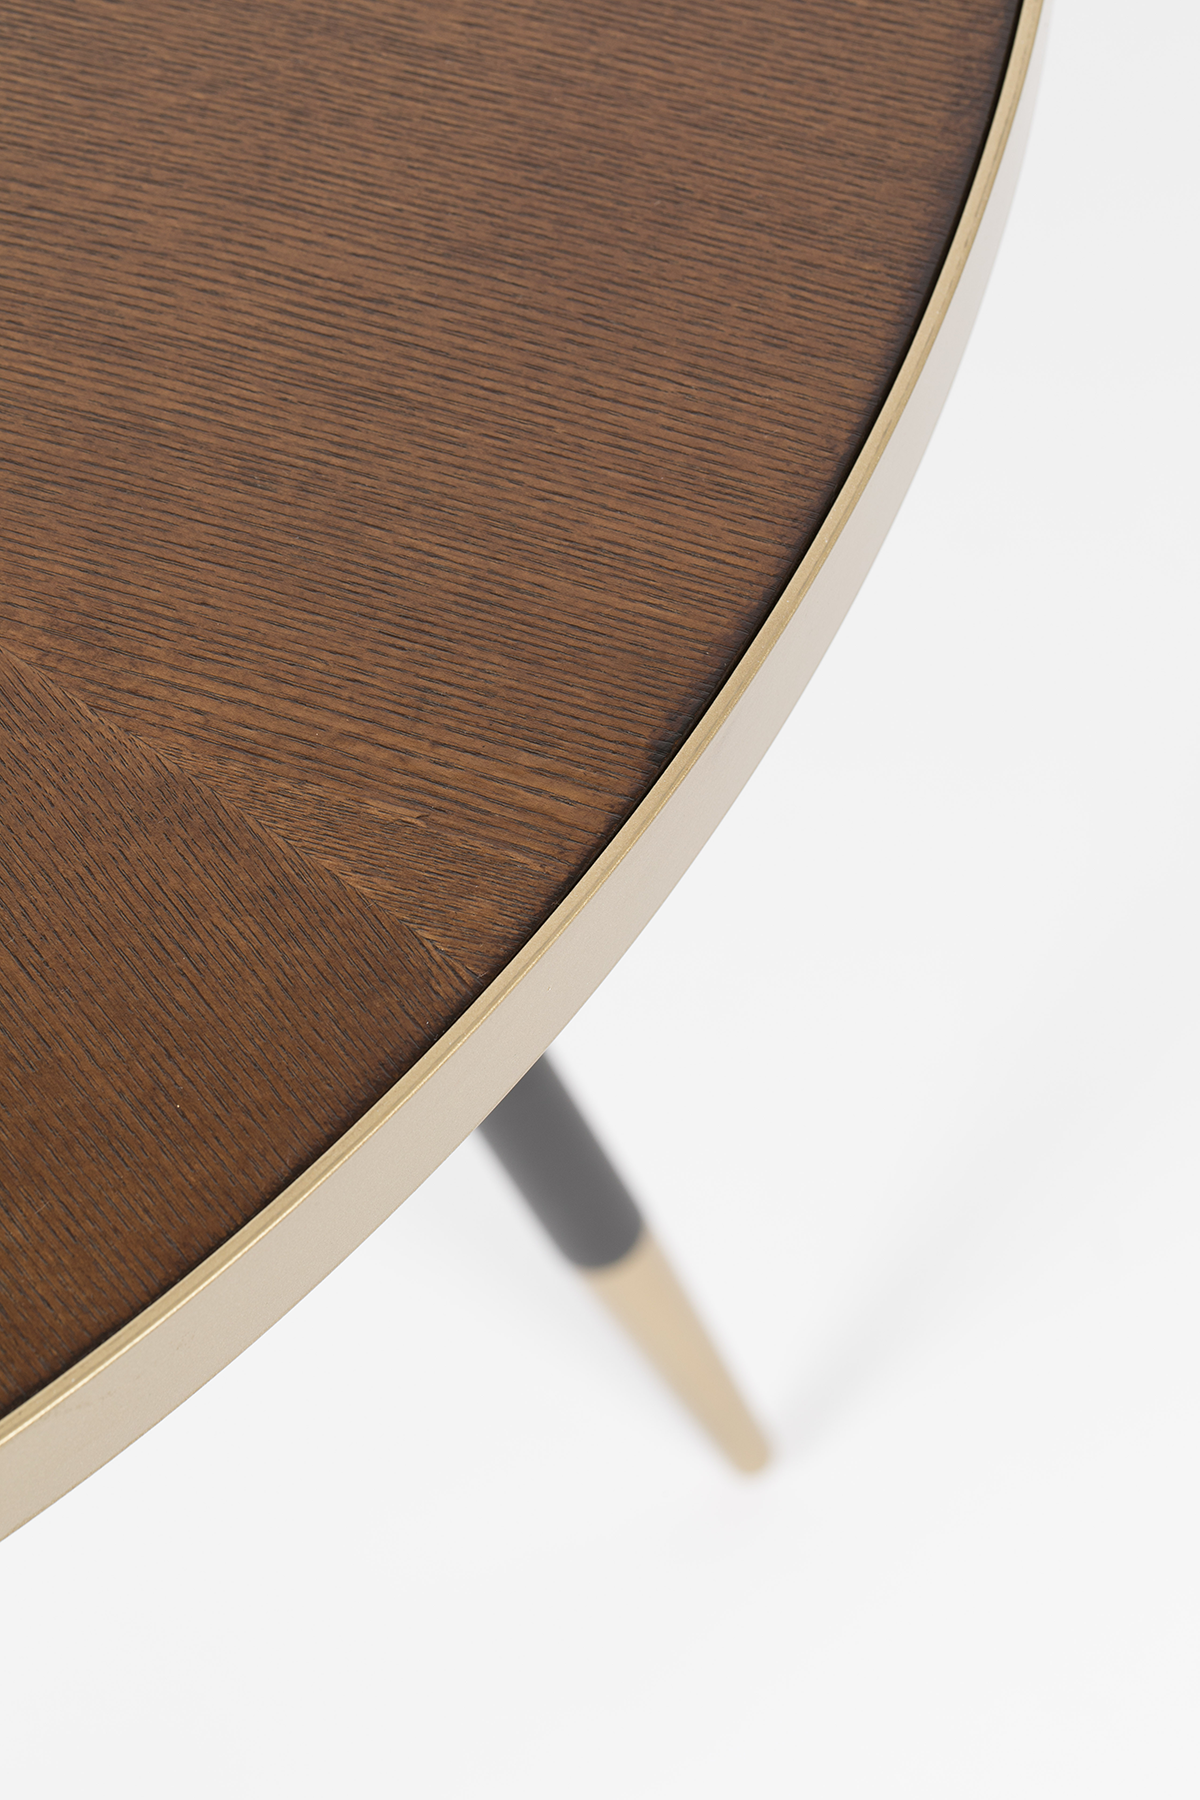 Tisch DENISE rund - KAQTU Design